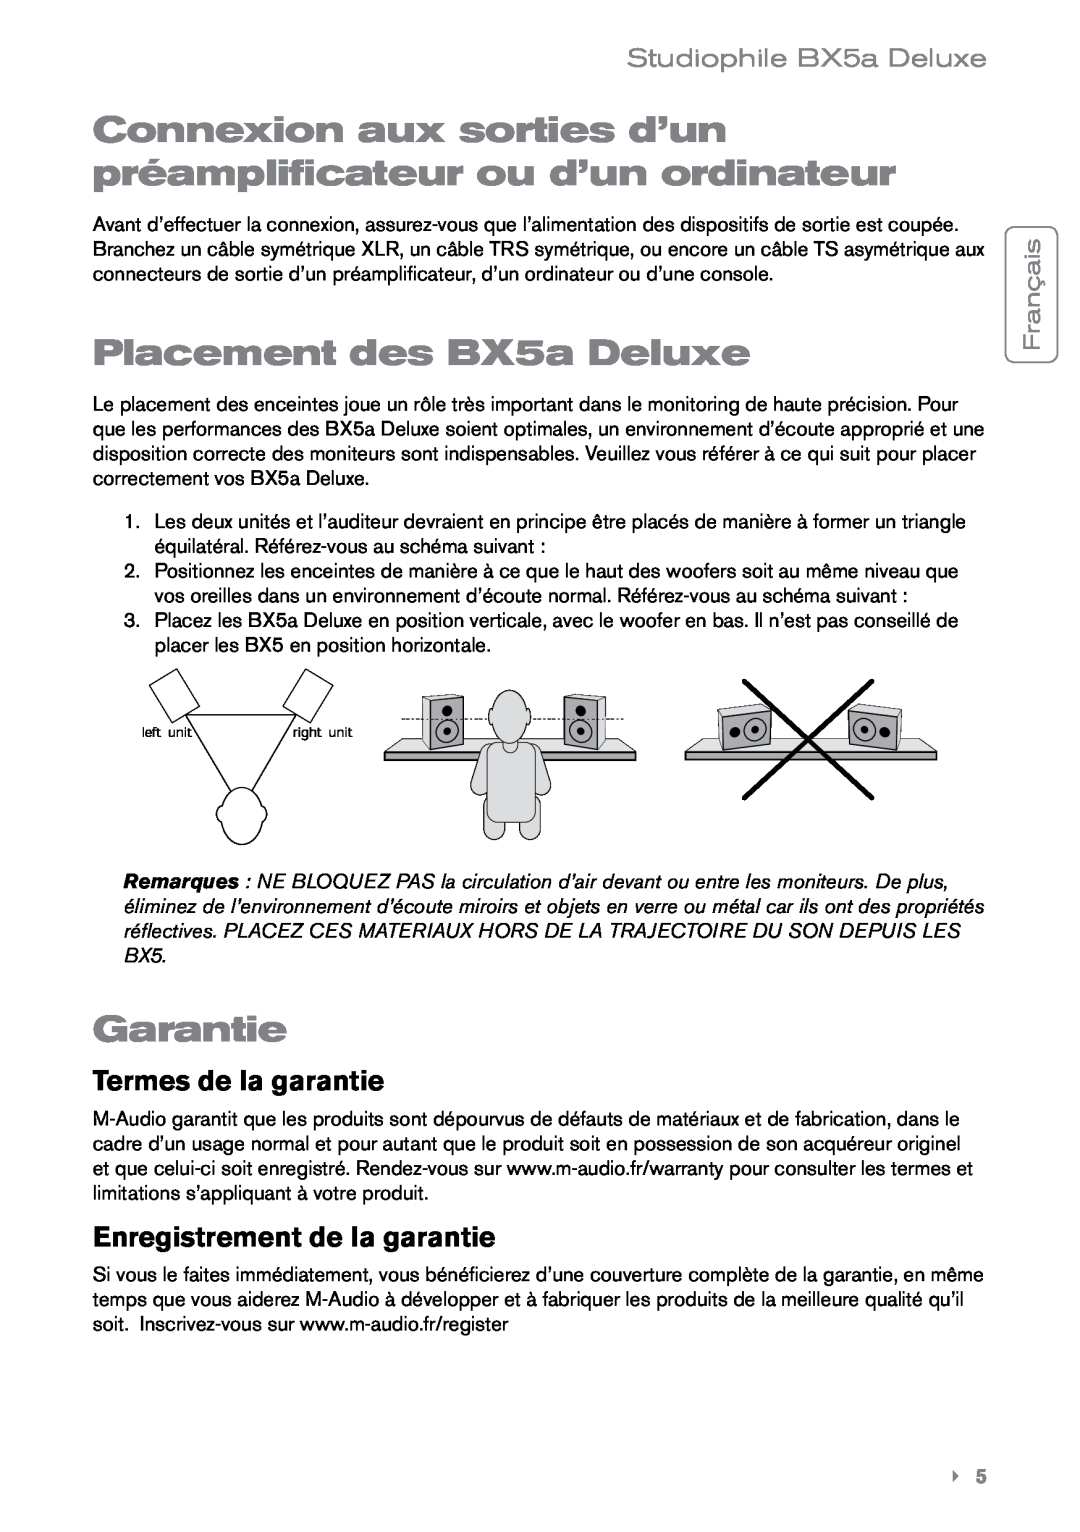 M-Audio manual Placement des BX5a Deluxe, Garantie, Termes de la garantie, Enregistrement de la garantie, Français 